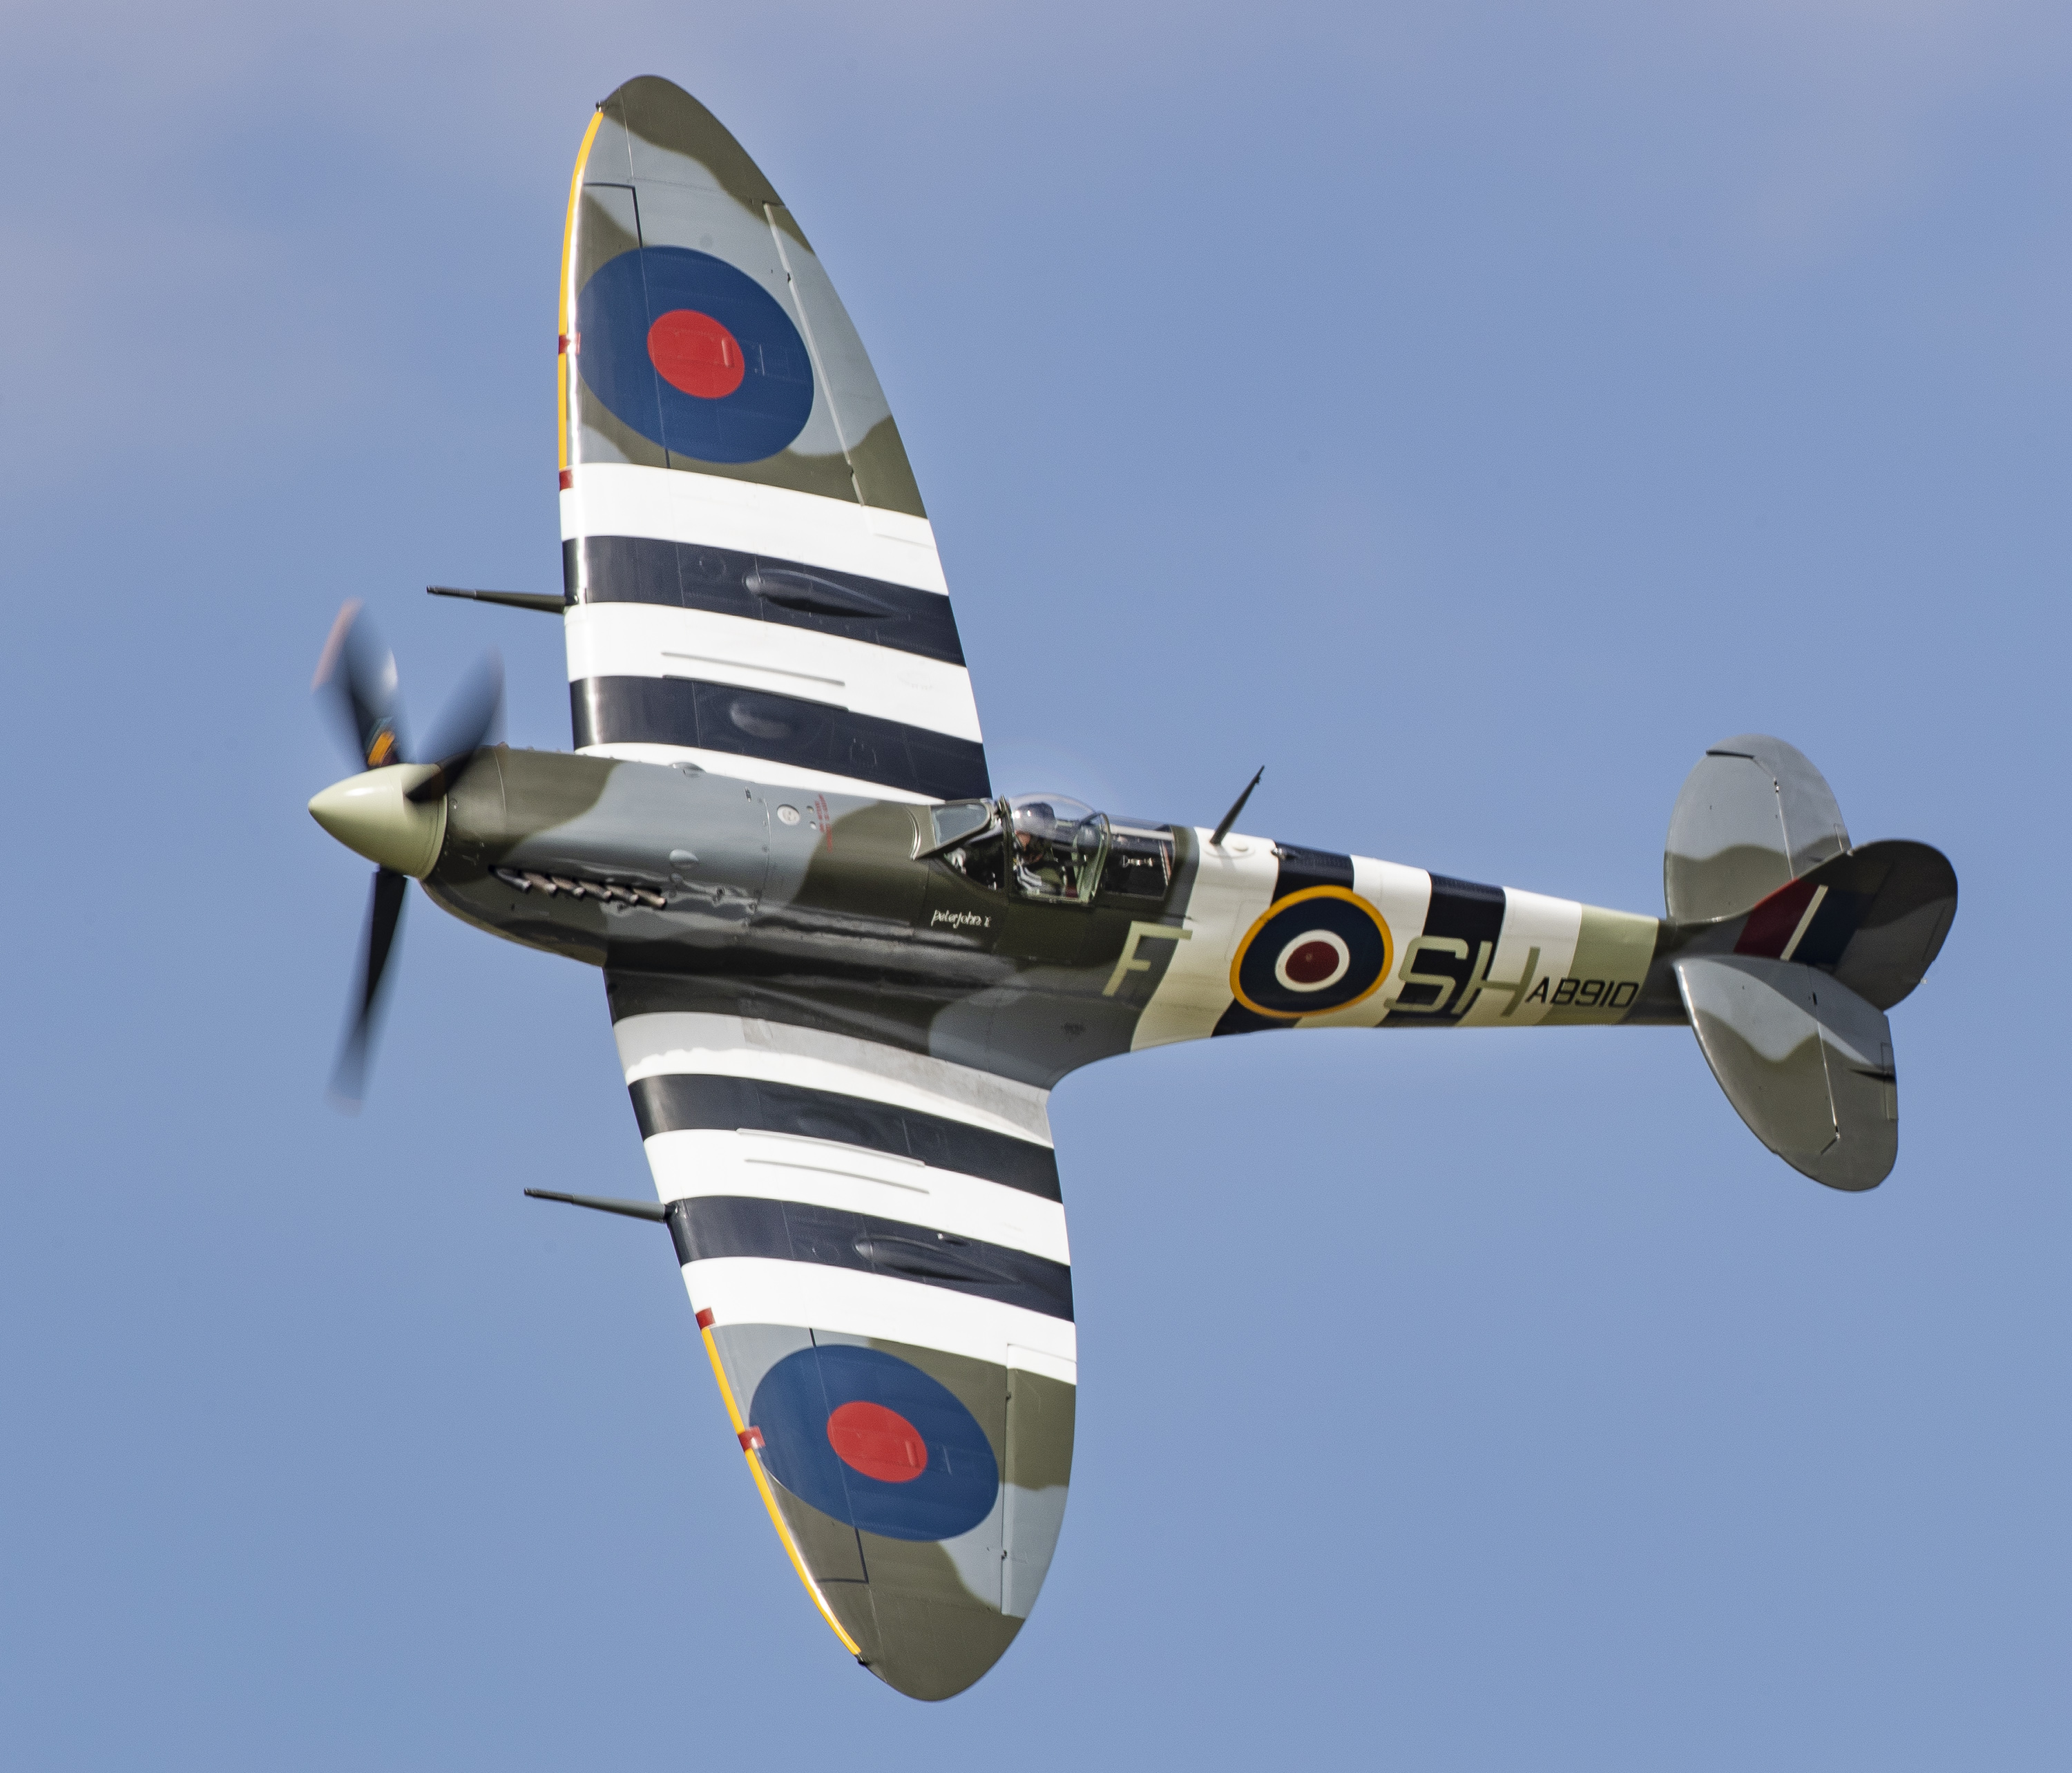 Spitfire Mk Vb AB910 flying.